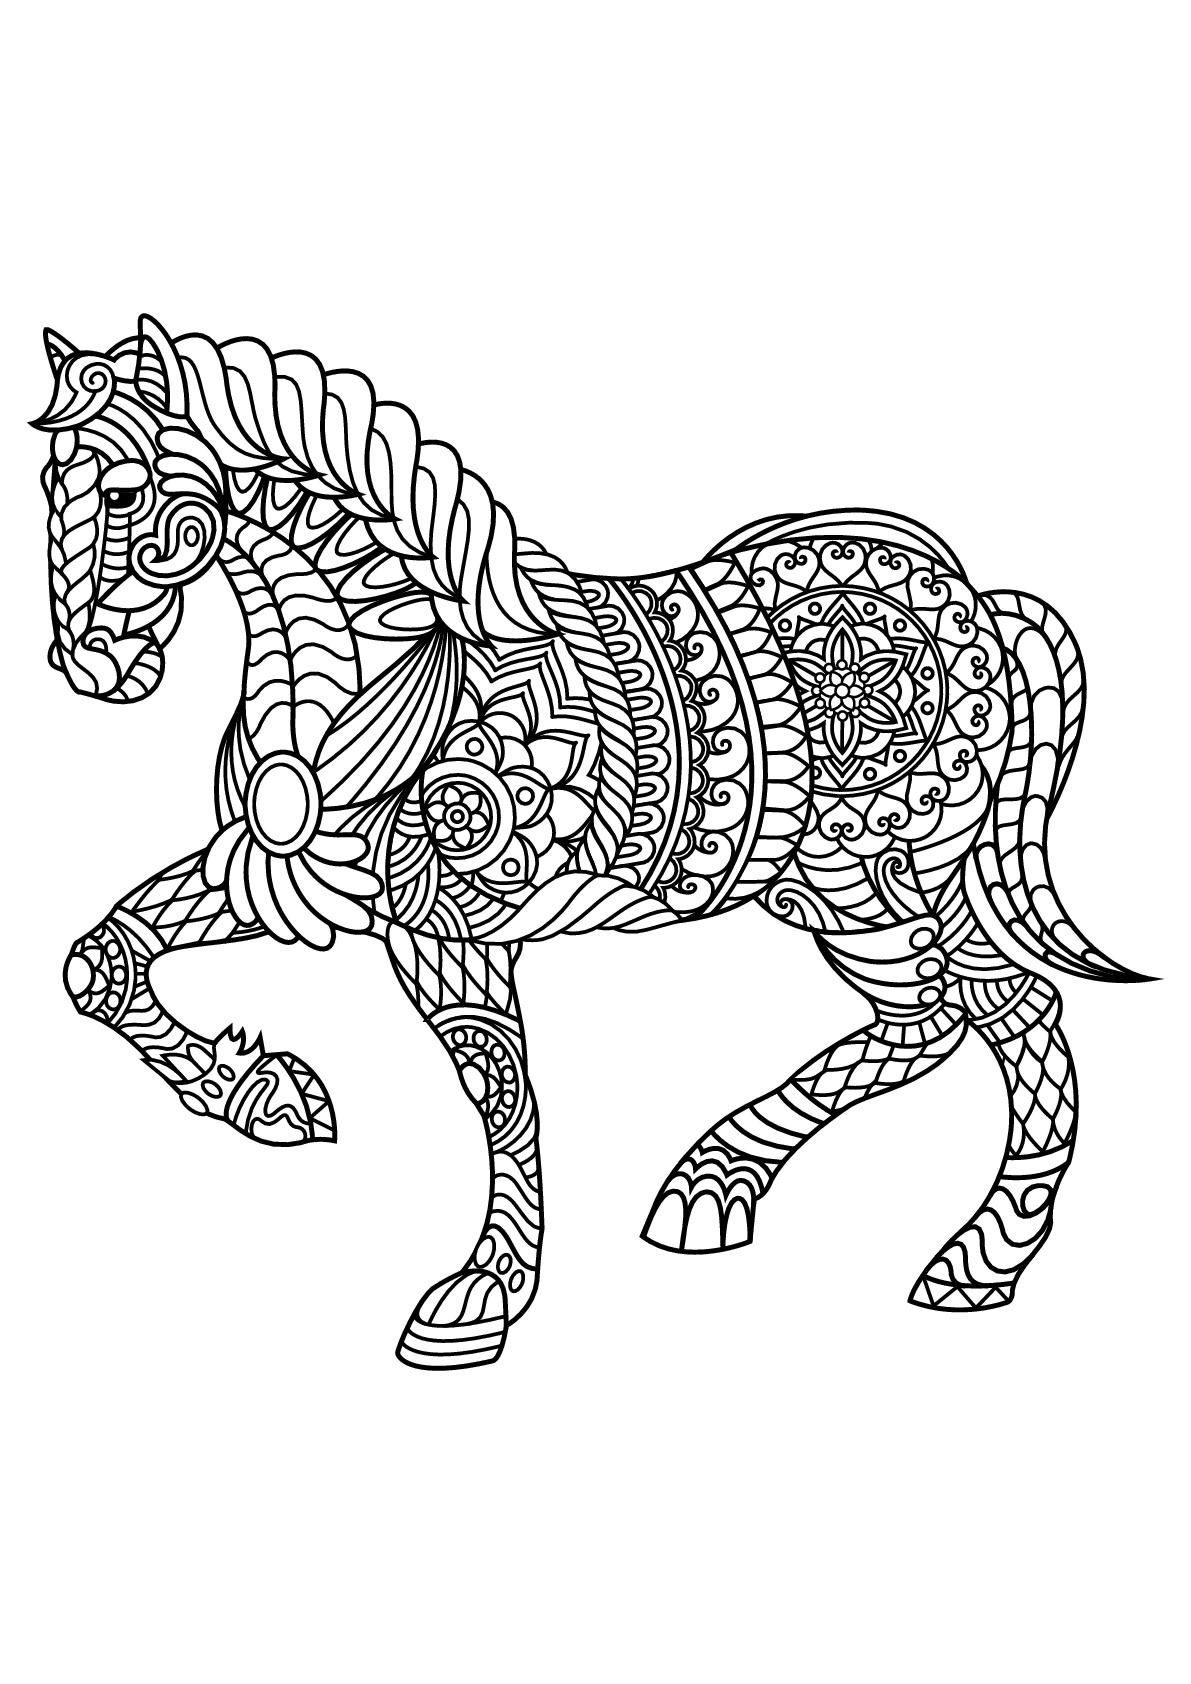 Cavalo, com padrões harmoniosos e complexos